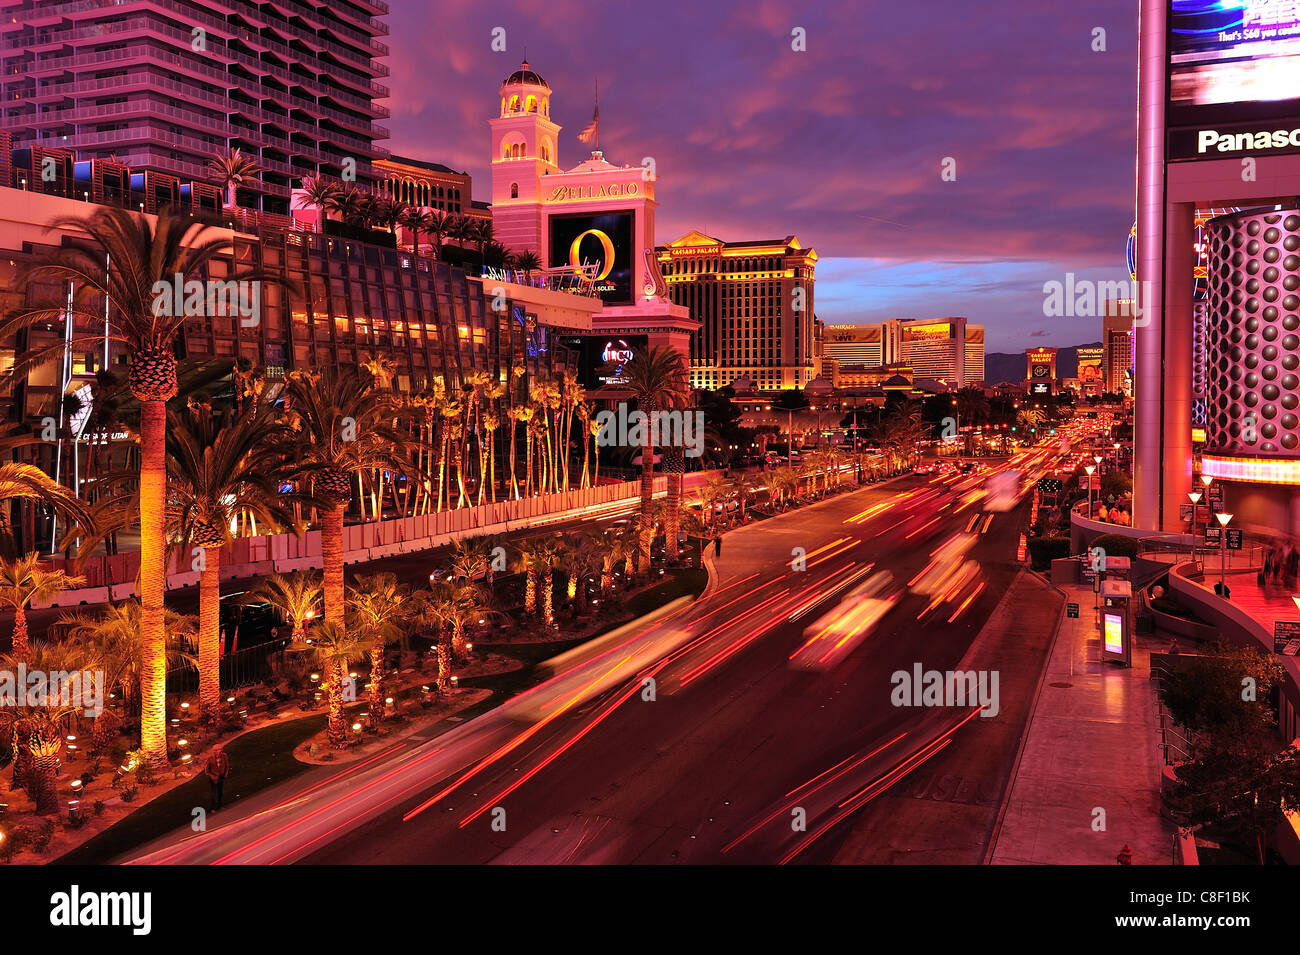 Las Vegas, boulevard, Caesars, Palace, Hotel, Casino, Las Vegas Strip, Las Vegas, Nevada, USA, United States, America, Stock Photo